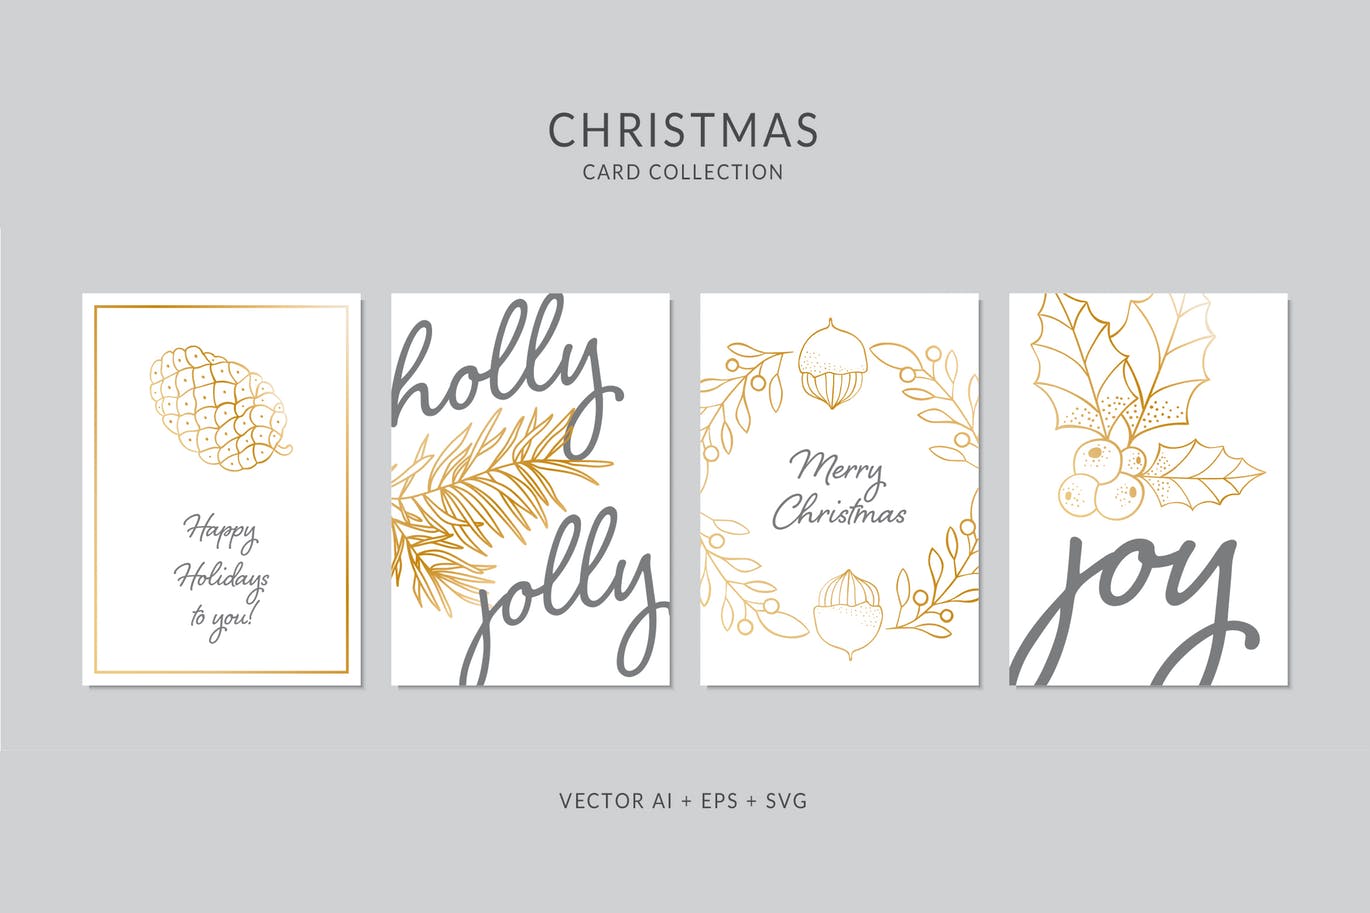 简笔画圣诞节植物手绘圣诞节贺卡设计模板 Christmas Greeting Card Vector Set插图